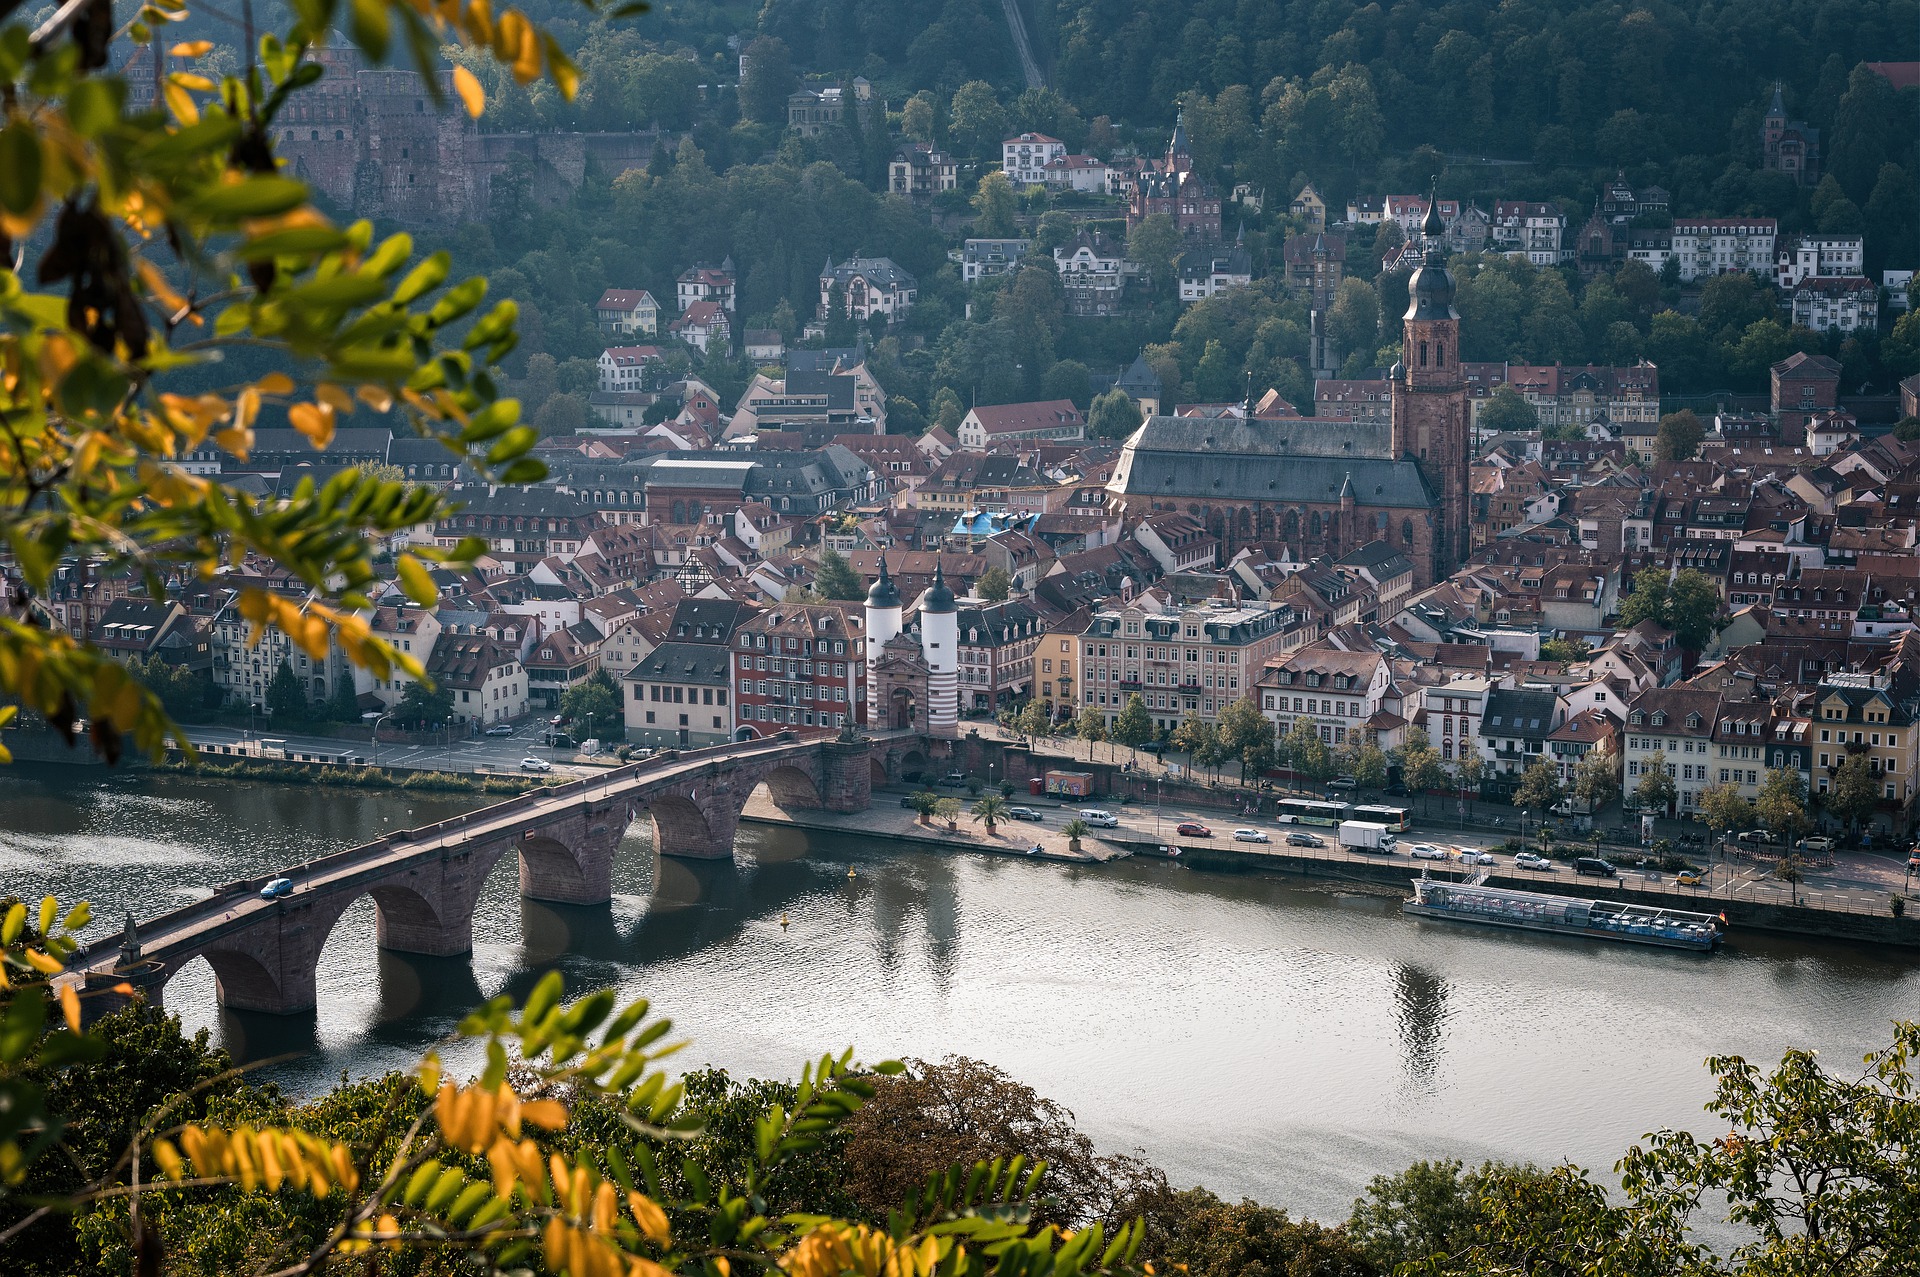 Urlaub in Süddeutschland führt an Heidelberg nicht vorbei